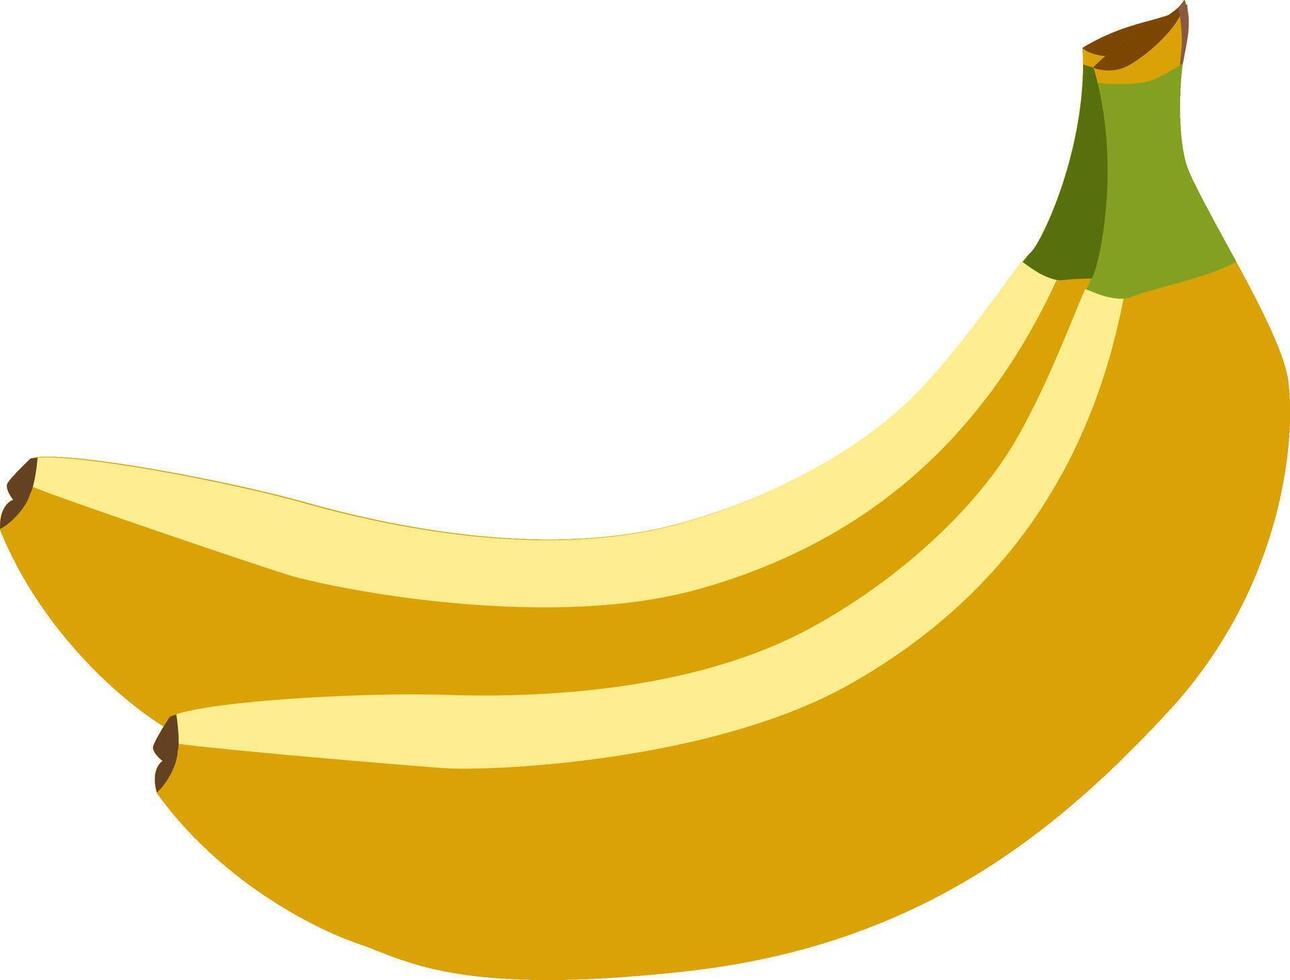 banane beauté - une visuellement attirant représentation de le esthétique charme a trouvé dans le simplicité de une banane, adapté pour divers conception applications. banane vecteur illustration.